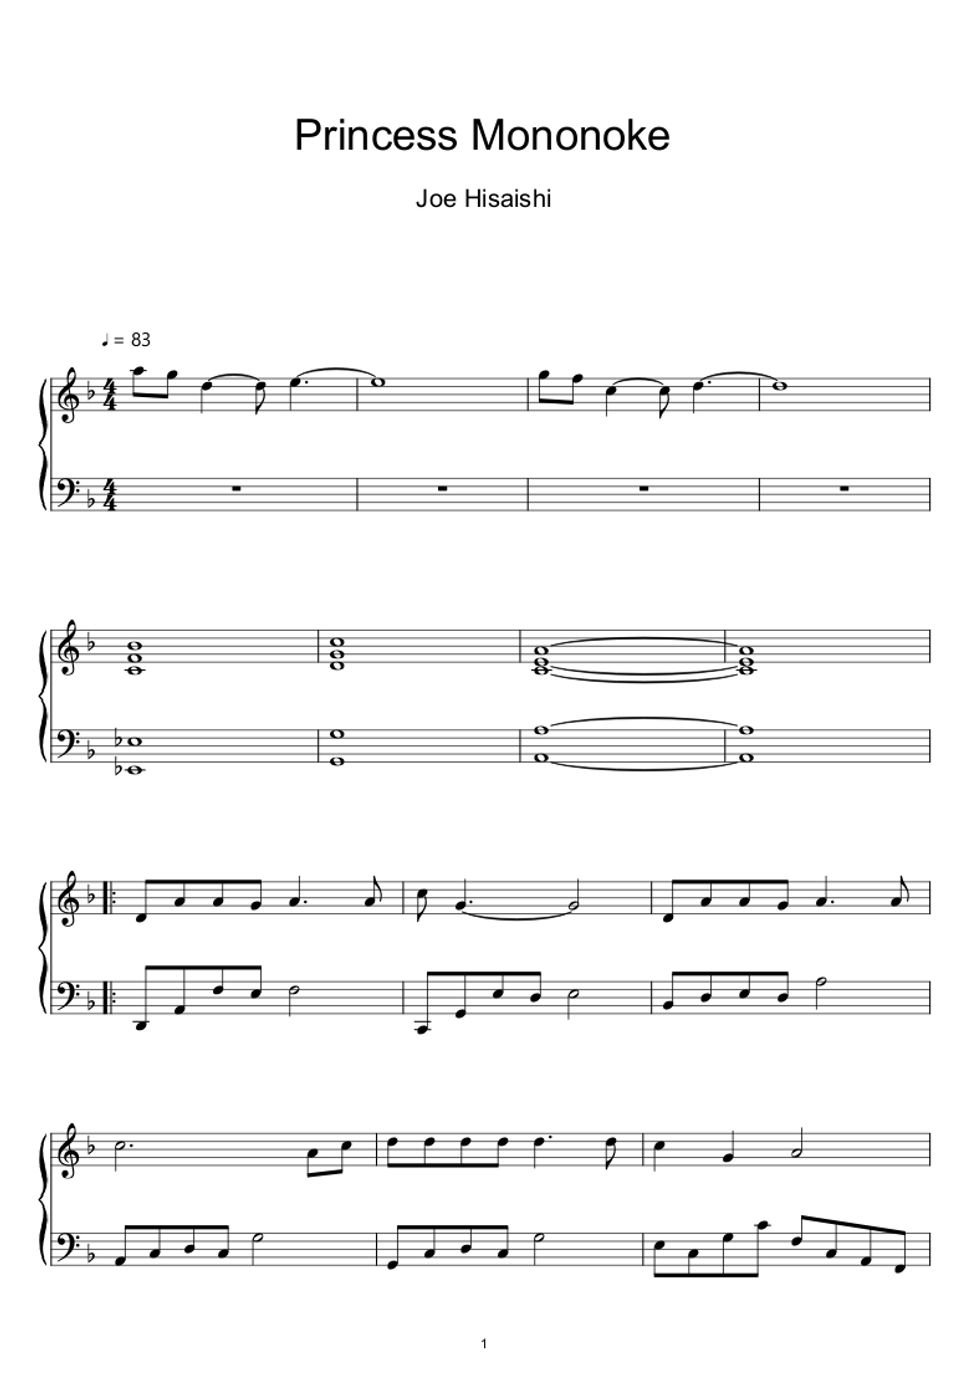 久石譲 (Joe Hisaishi) - Princess Mononoke『もののけ姫』 (Sheet Music, MIDI,) by sayu